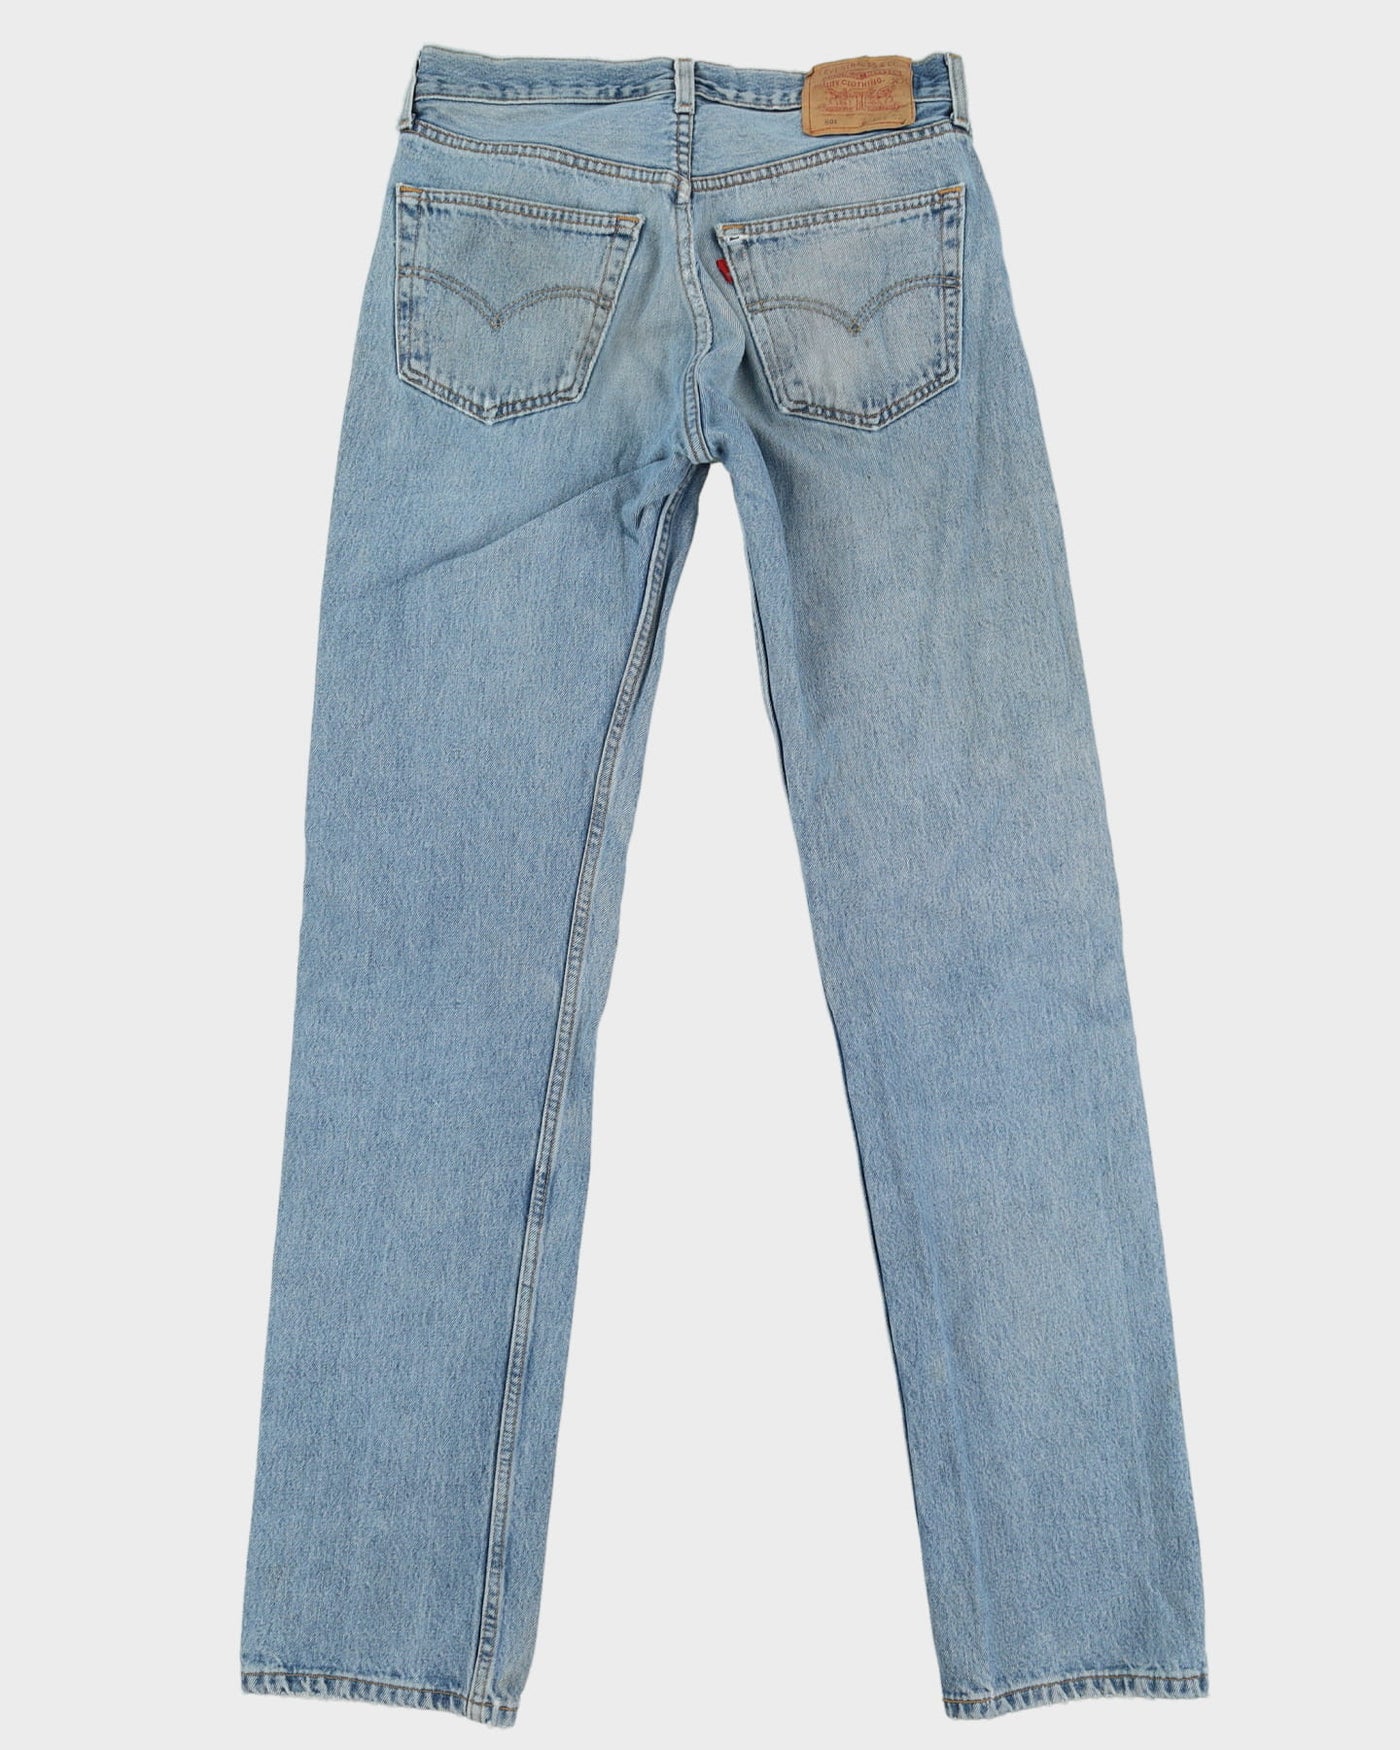 Vintage 80s Levi's 501 Blue Light Wash Jeans - W32 L35